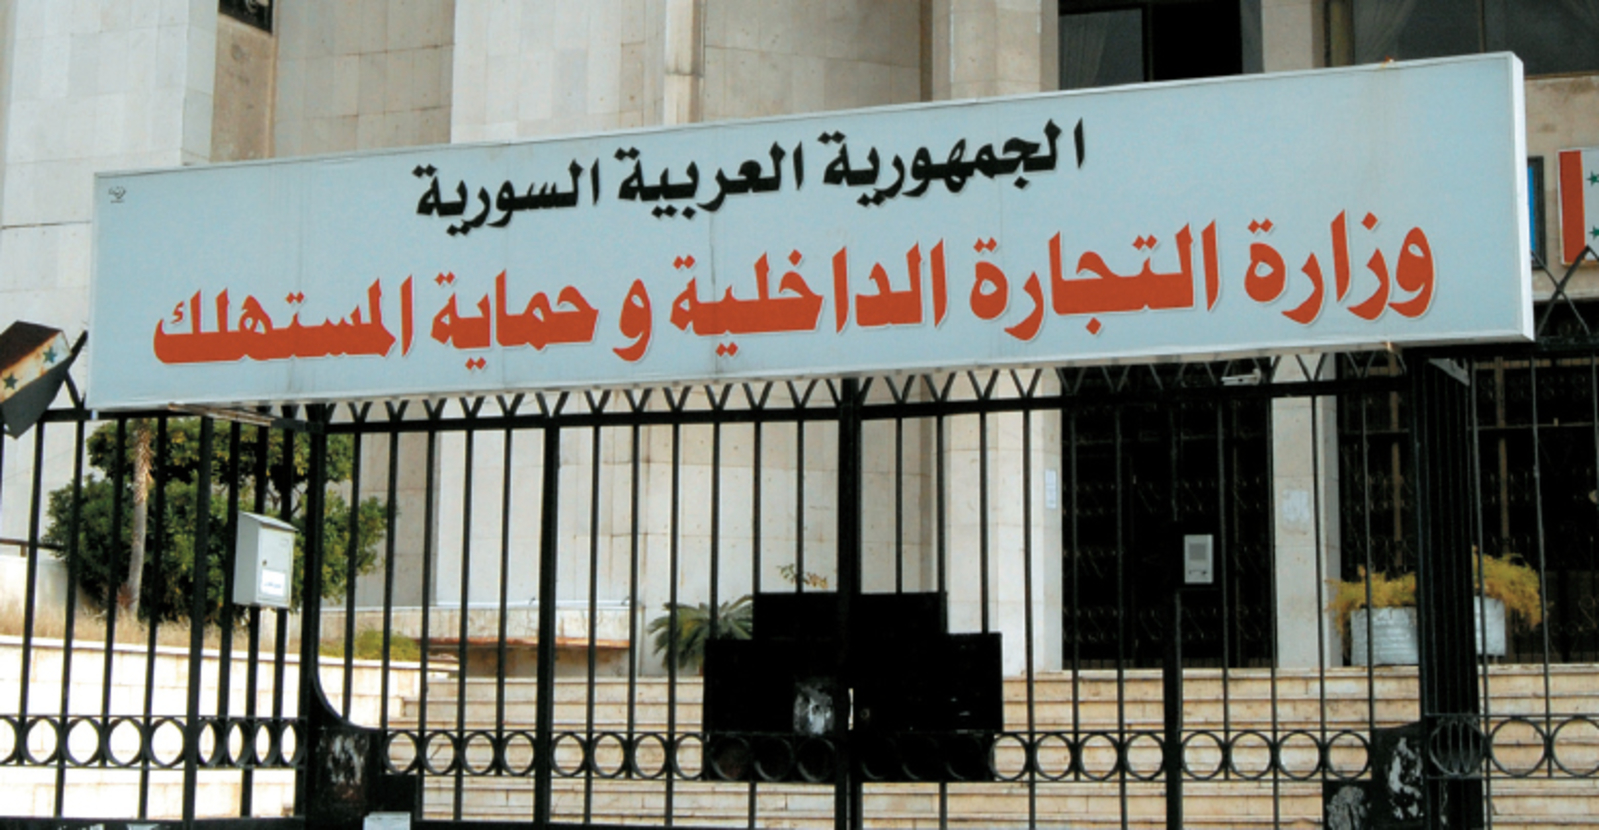 وزارة الداخلية و حماية المستهلك في سورية